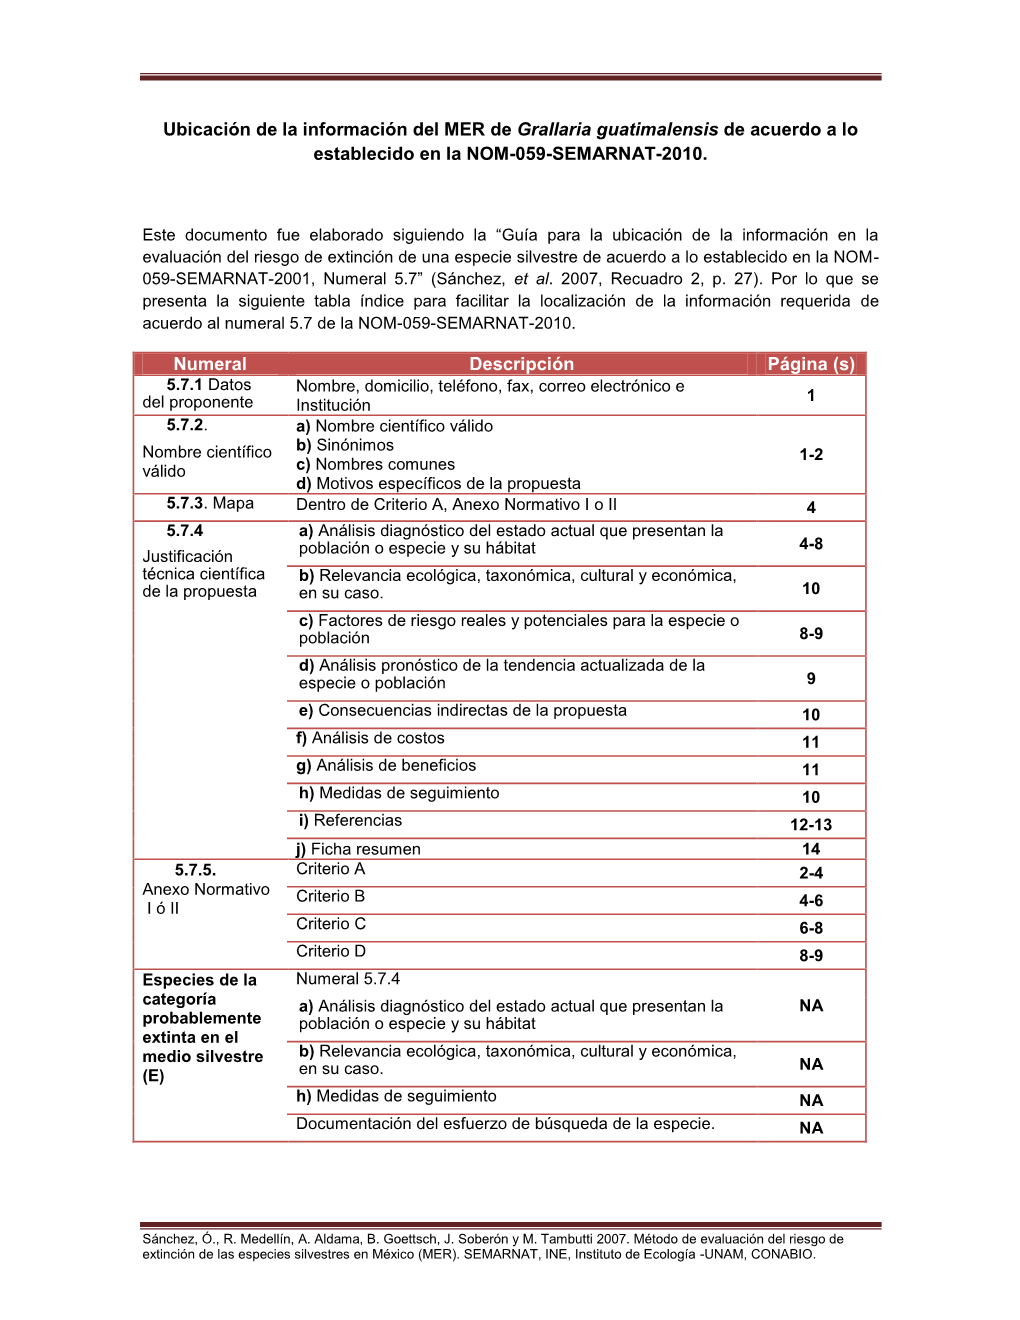 Ubicación De La Información Del MER De Grallaria Guatimalensis De Acuerdo a Lo Establecido En La NOM-059-SEMARNAT-2010